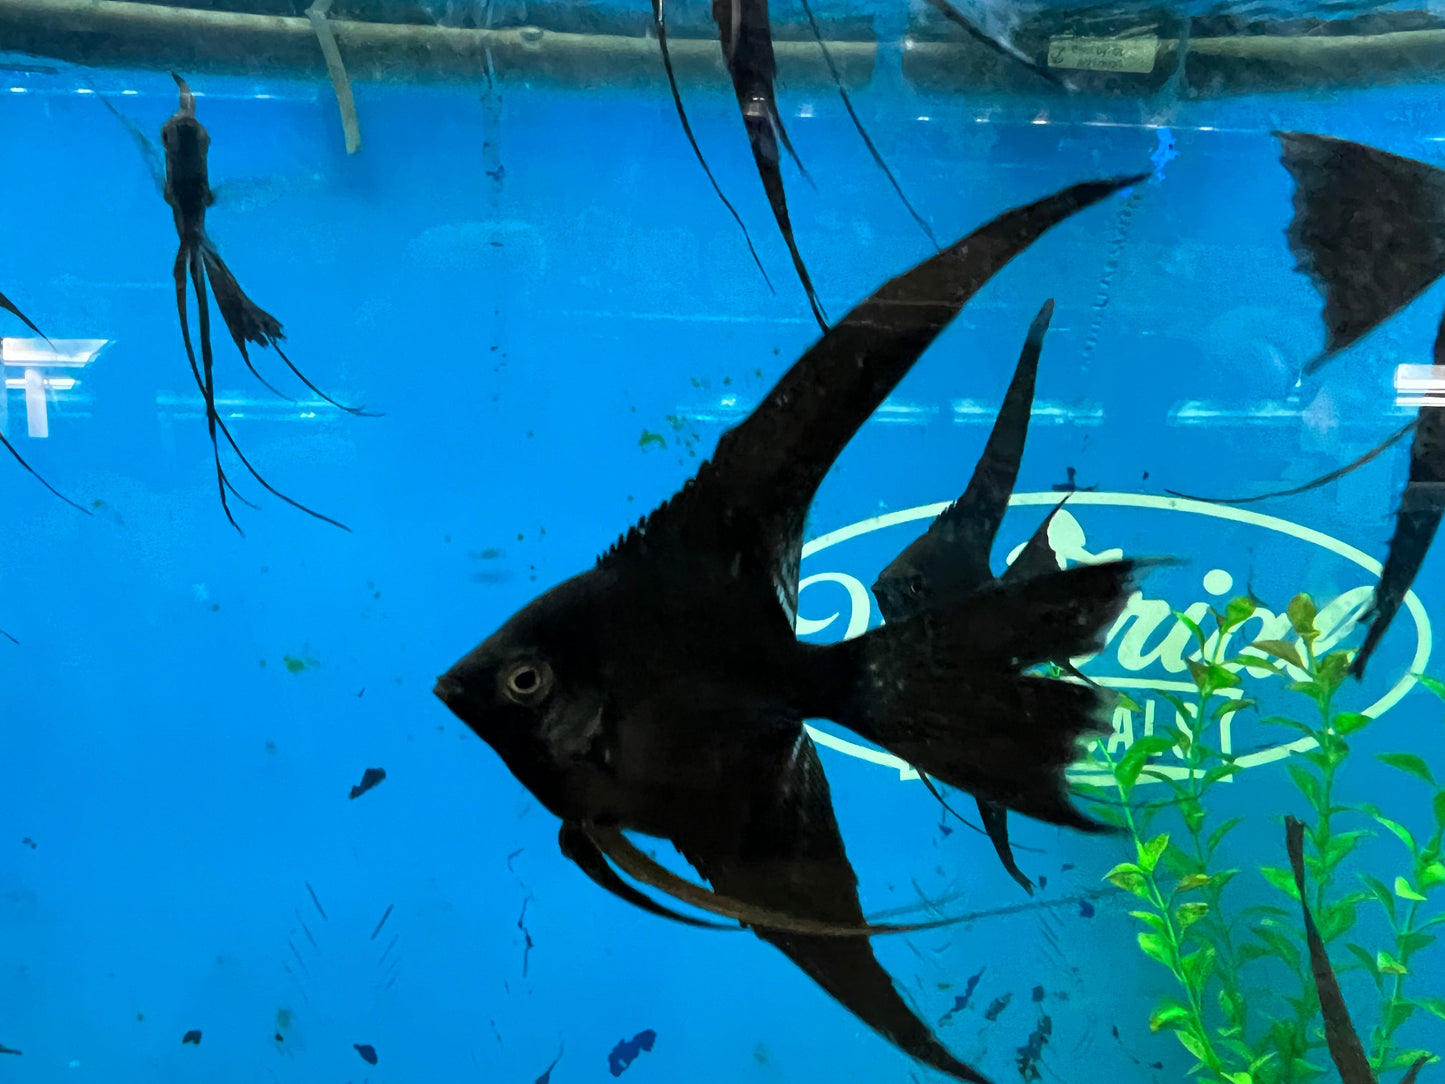 Black Veil-Tail Angelfish